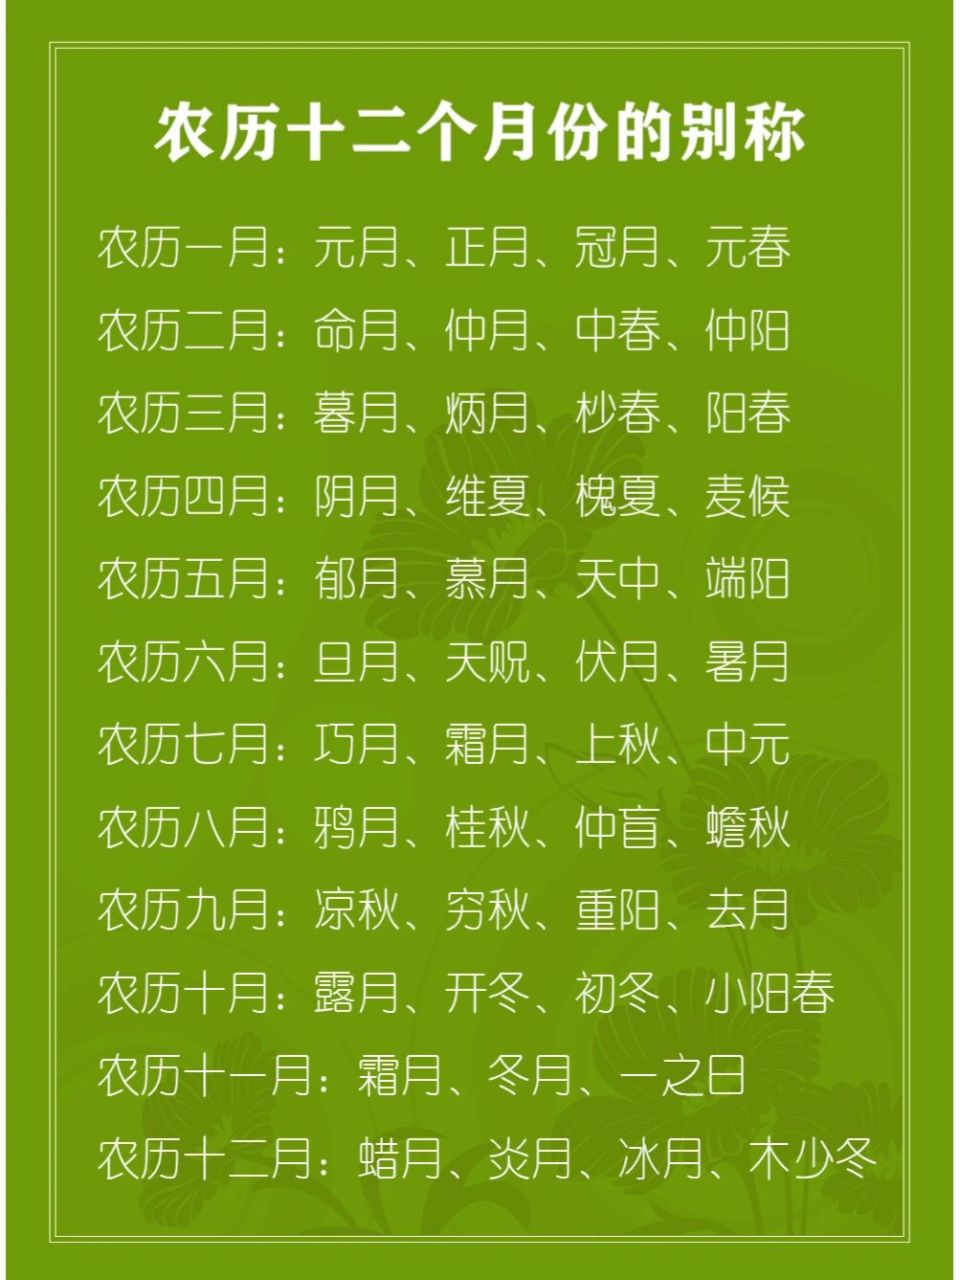 99汉语百科知识:农历十个月每月的别称 农历一月